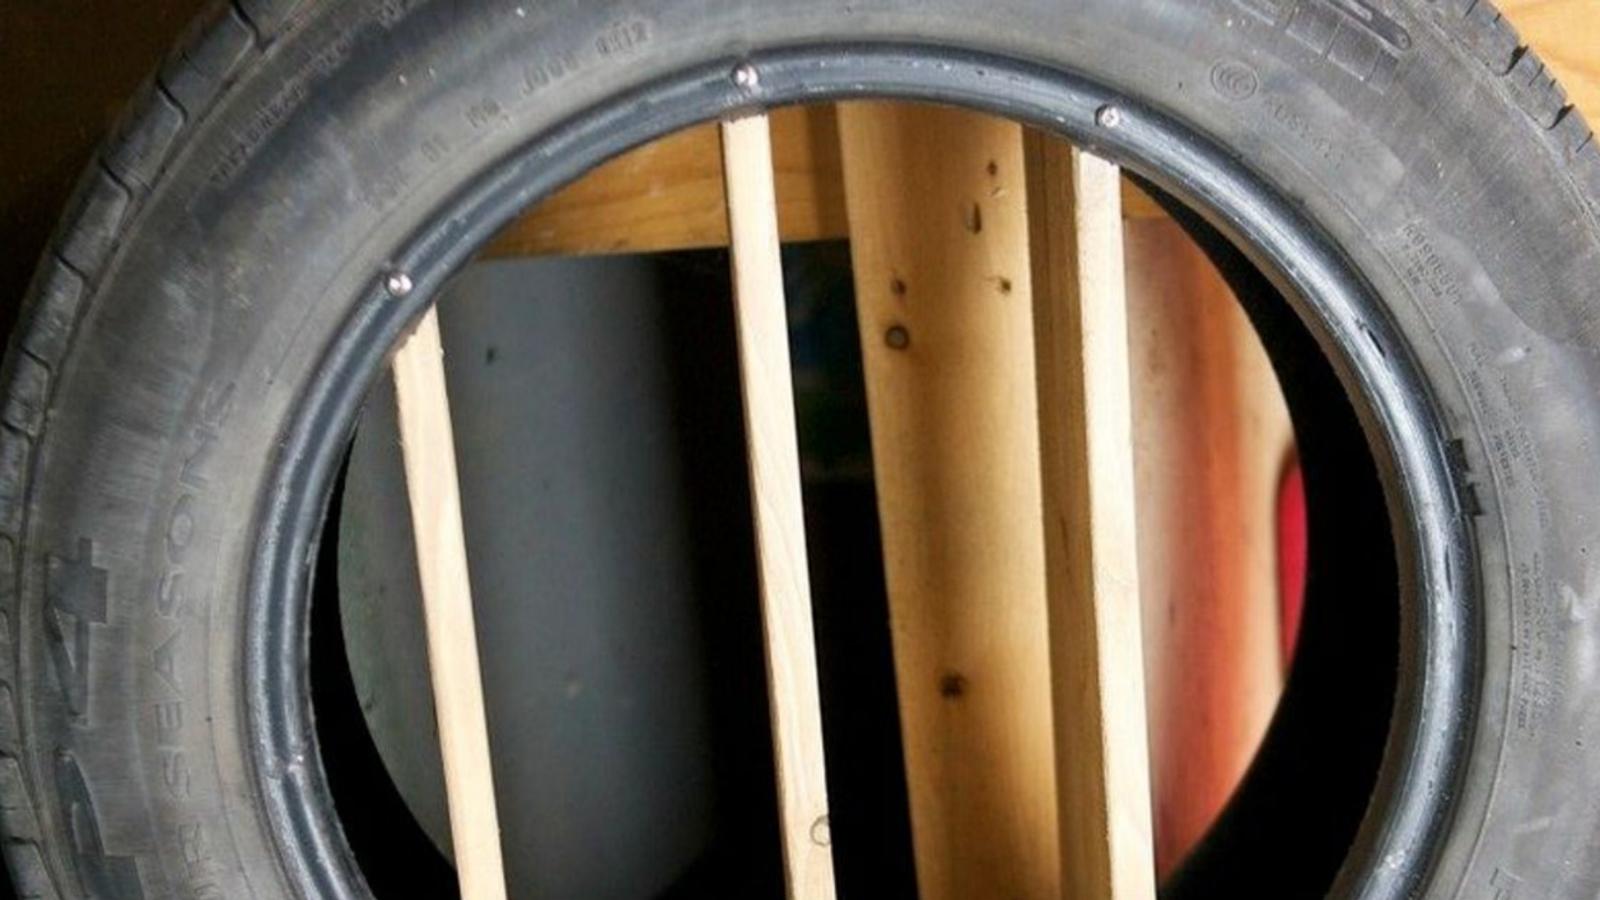 Il installe 3 planches de bois dans un pneu, la raison en est simple et brillante!